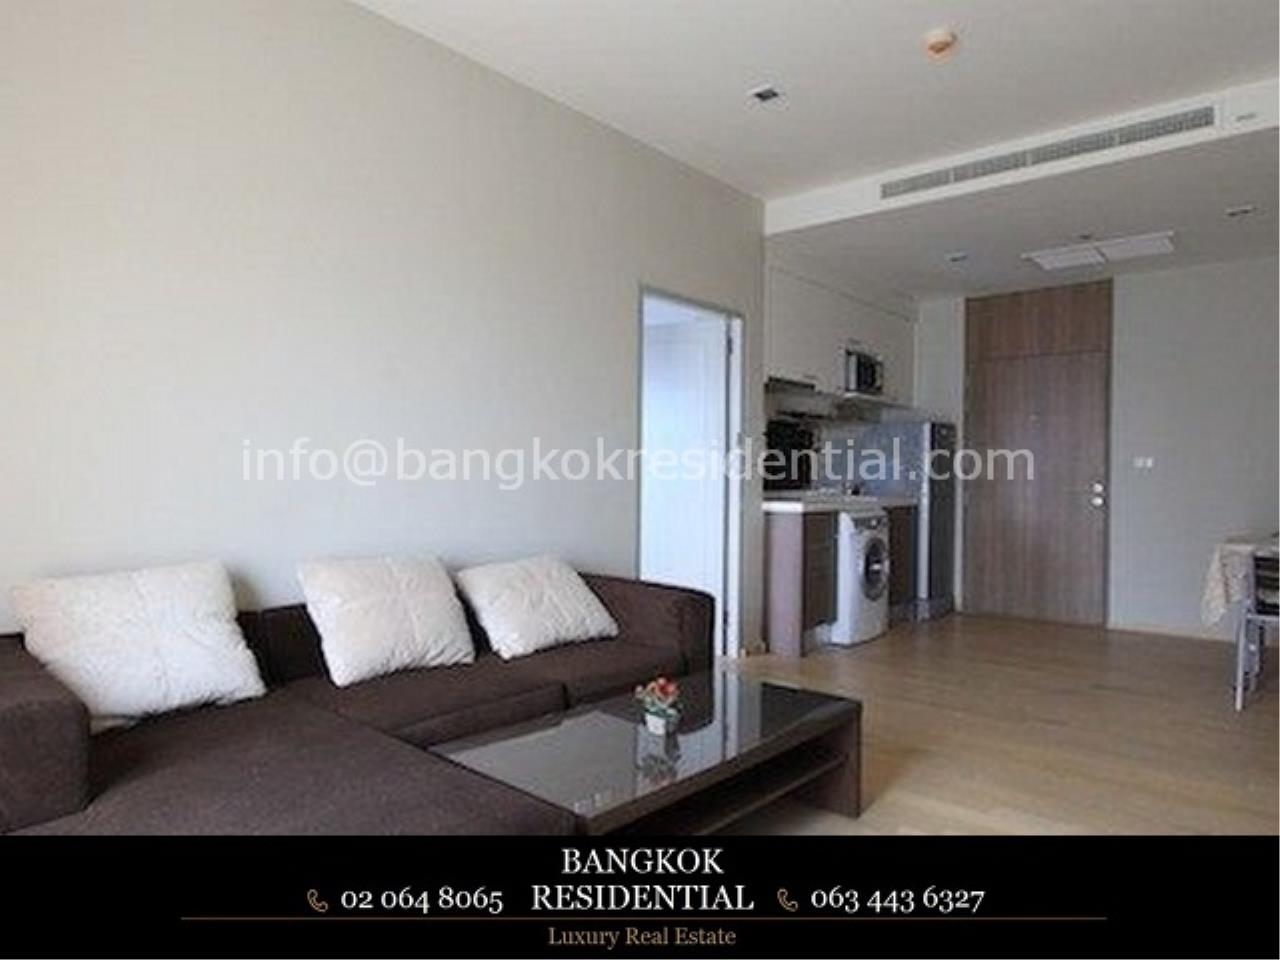 Bangkok Residential Agency's 1BR Noble Reveal For Rent (BR2435CD) 1